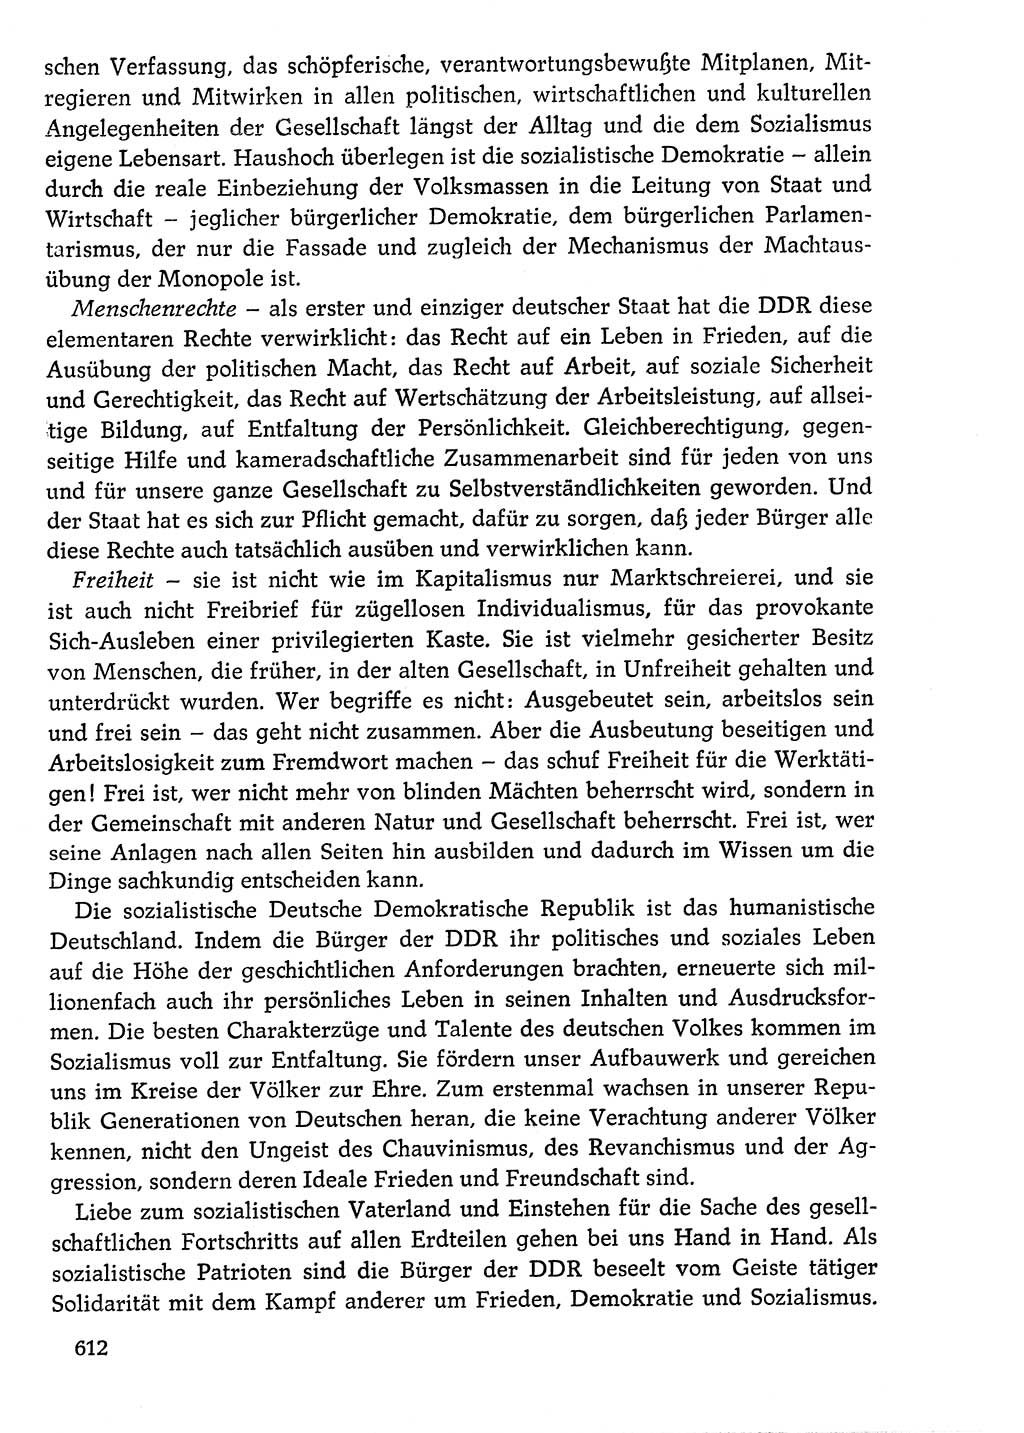 Dokumente der Sozialistischen Einheitspartei Deutschlands (SED) [Deutsche Demokratische Republik (DDR)] 1976-1977, Seite 612 (Dok. SED DDR 1976-1977, S. 612)